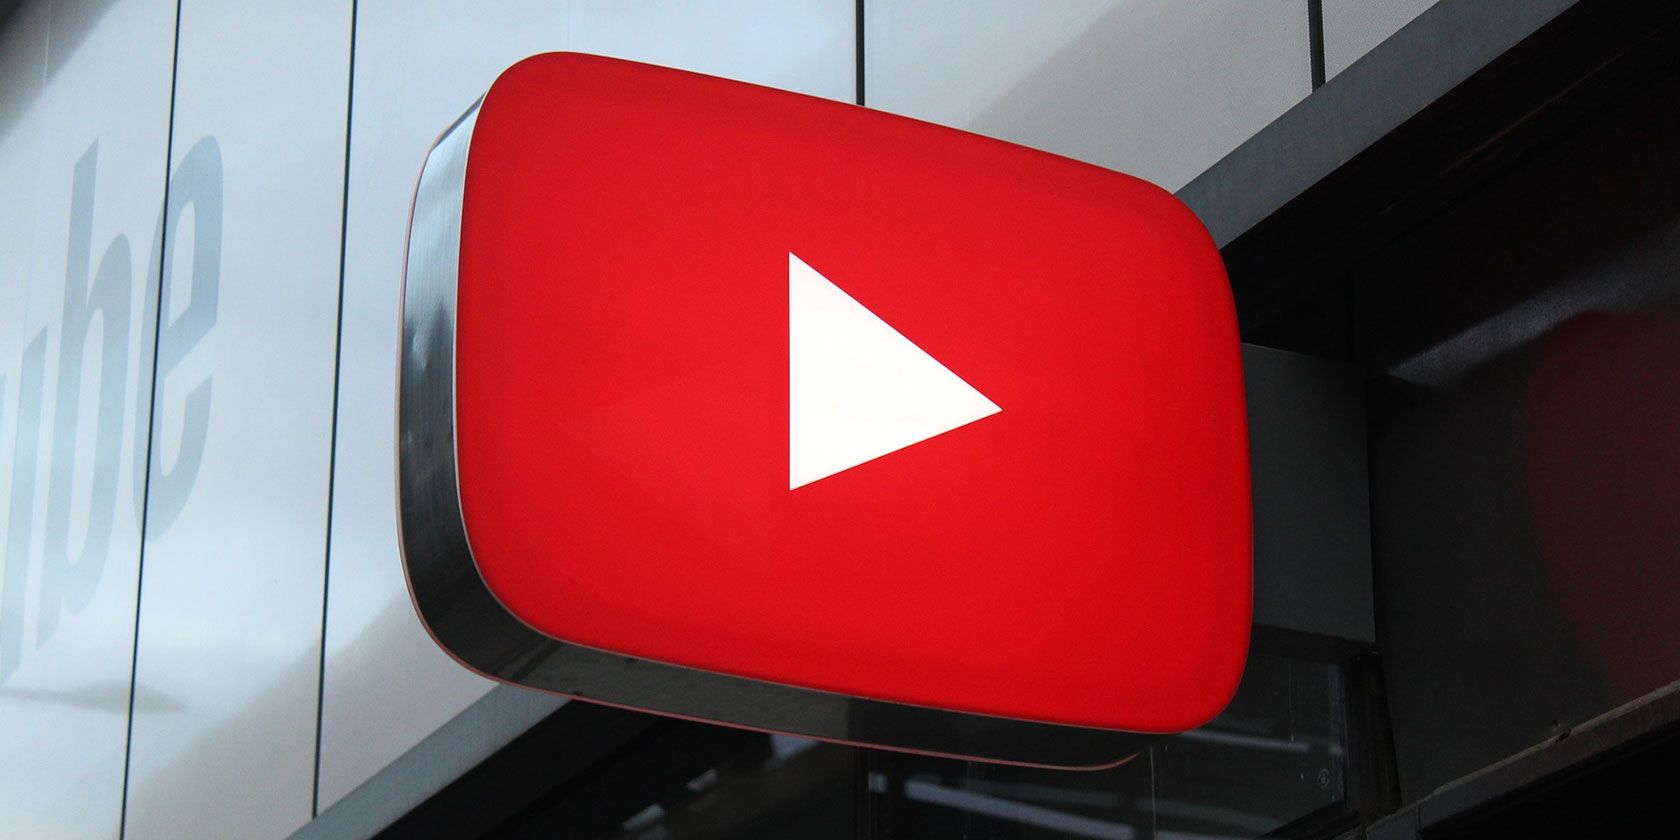 youtube logo as a sign